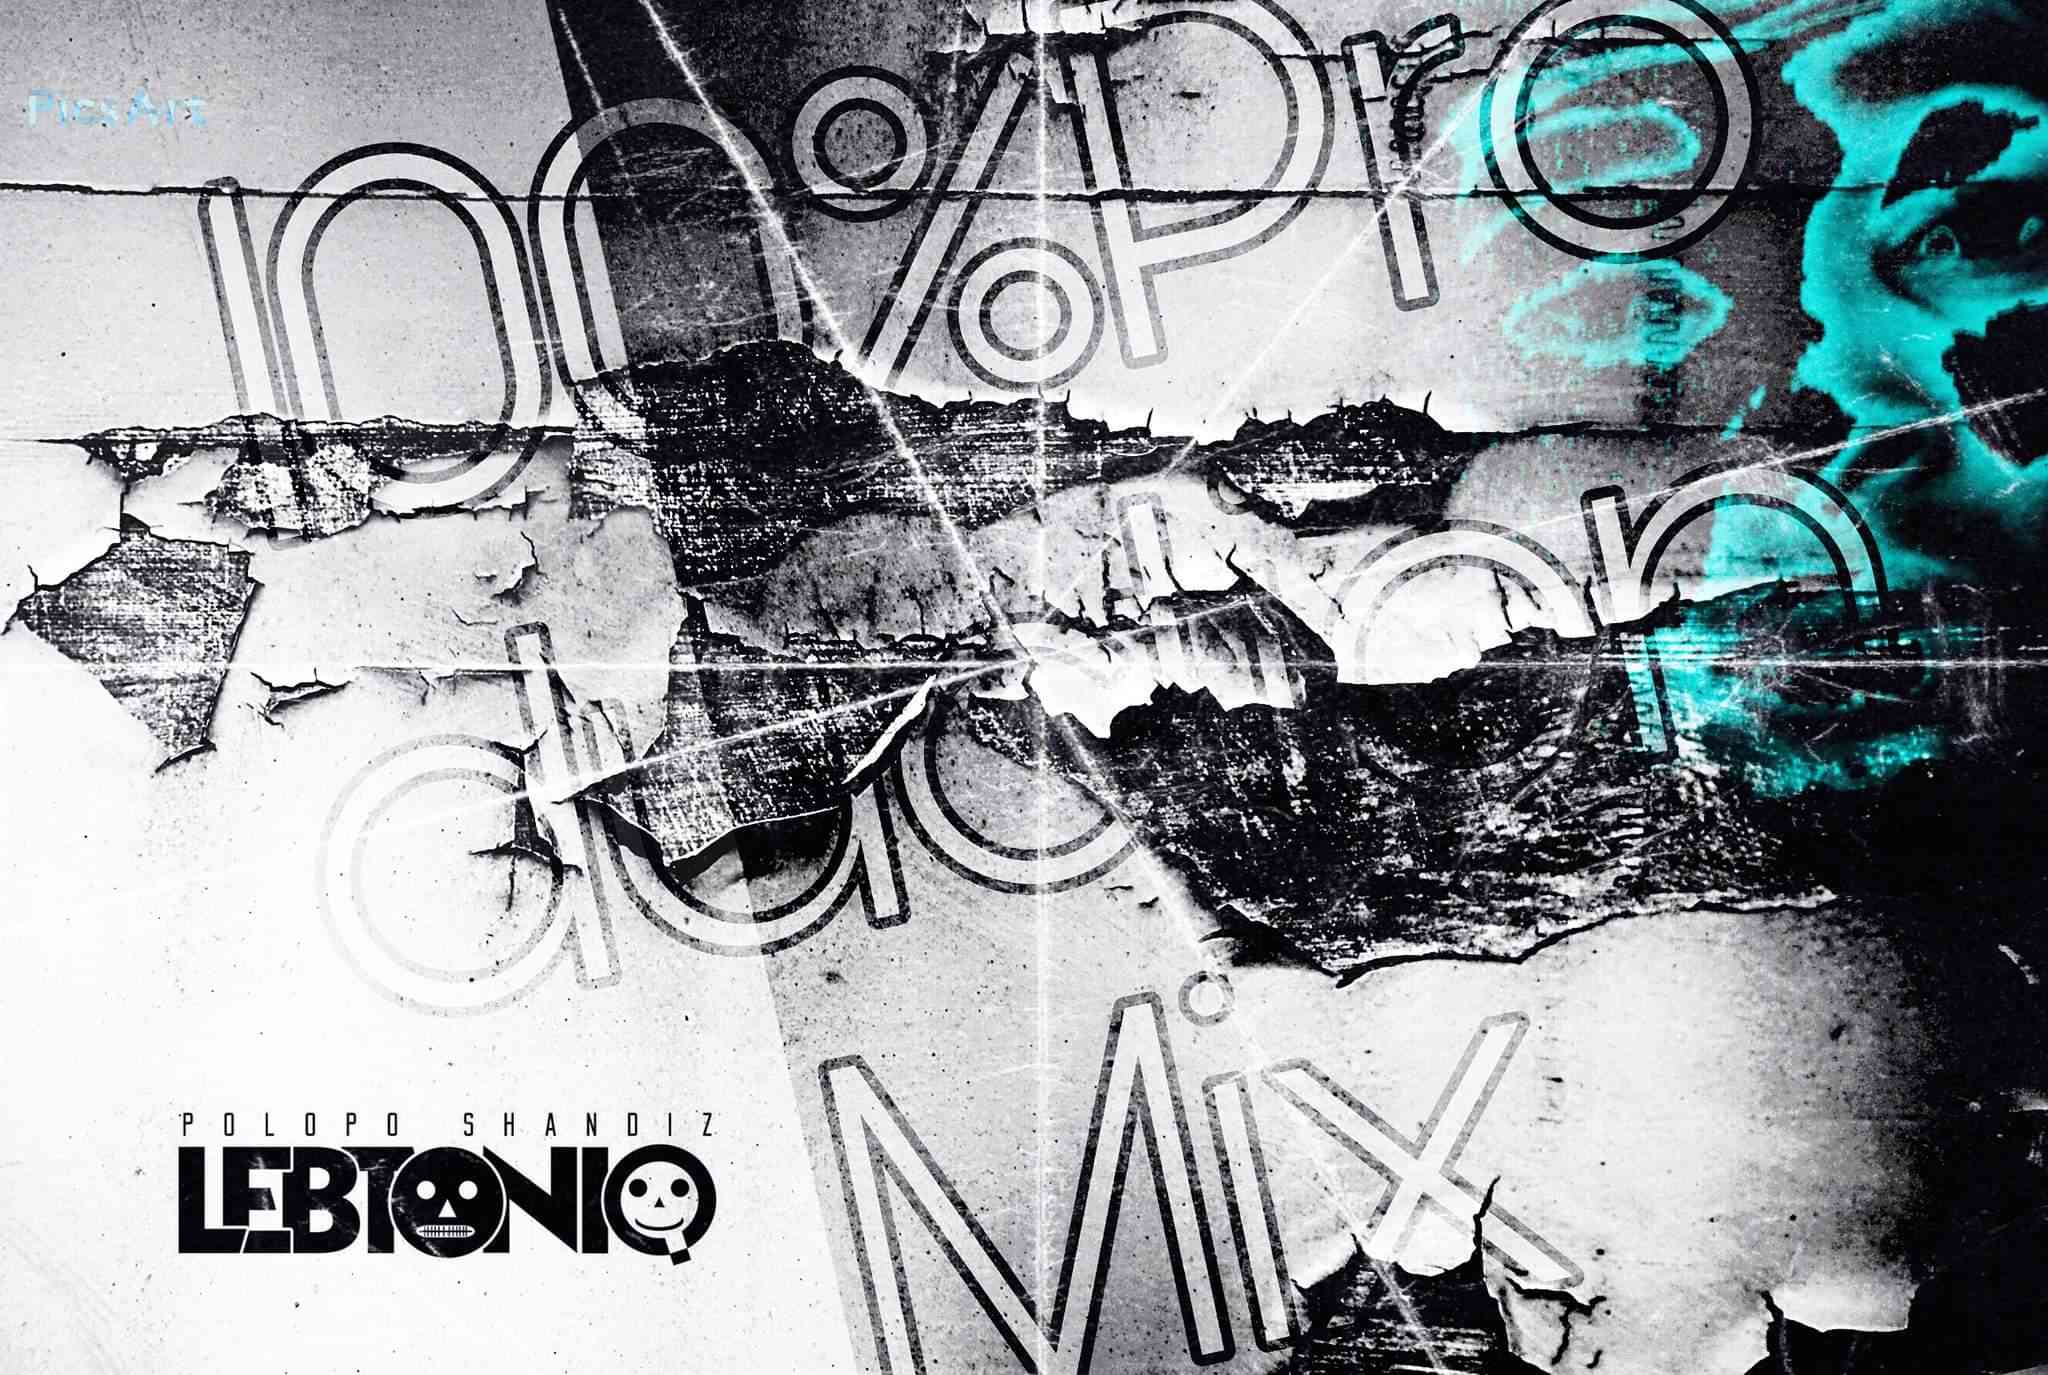 LebtoniQ POLOPO 26 Mix (100% Production mix)